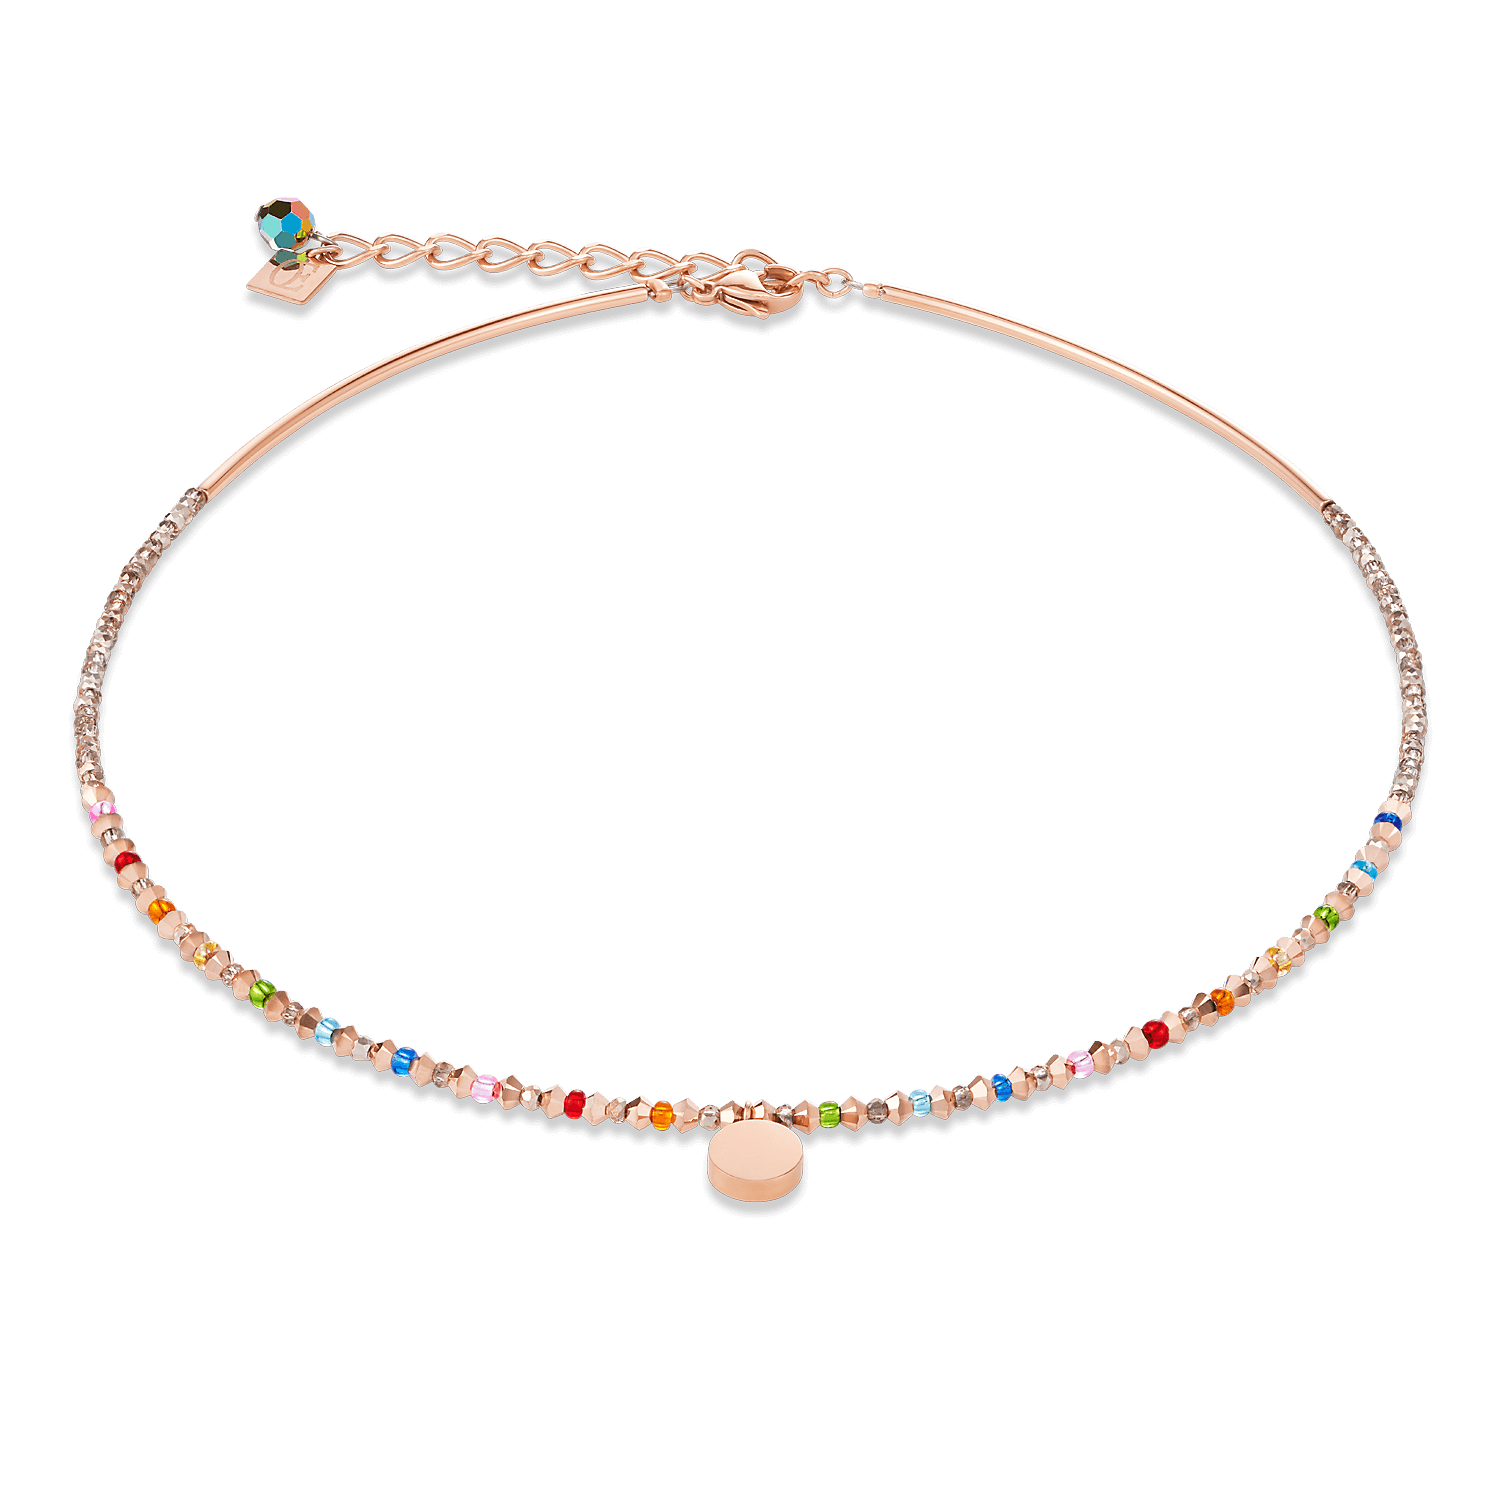 Coeur de Lion - Halskette in Roségold mit Swarovski Kristallen